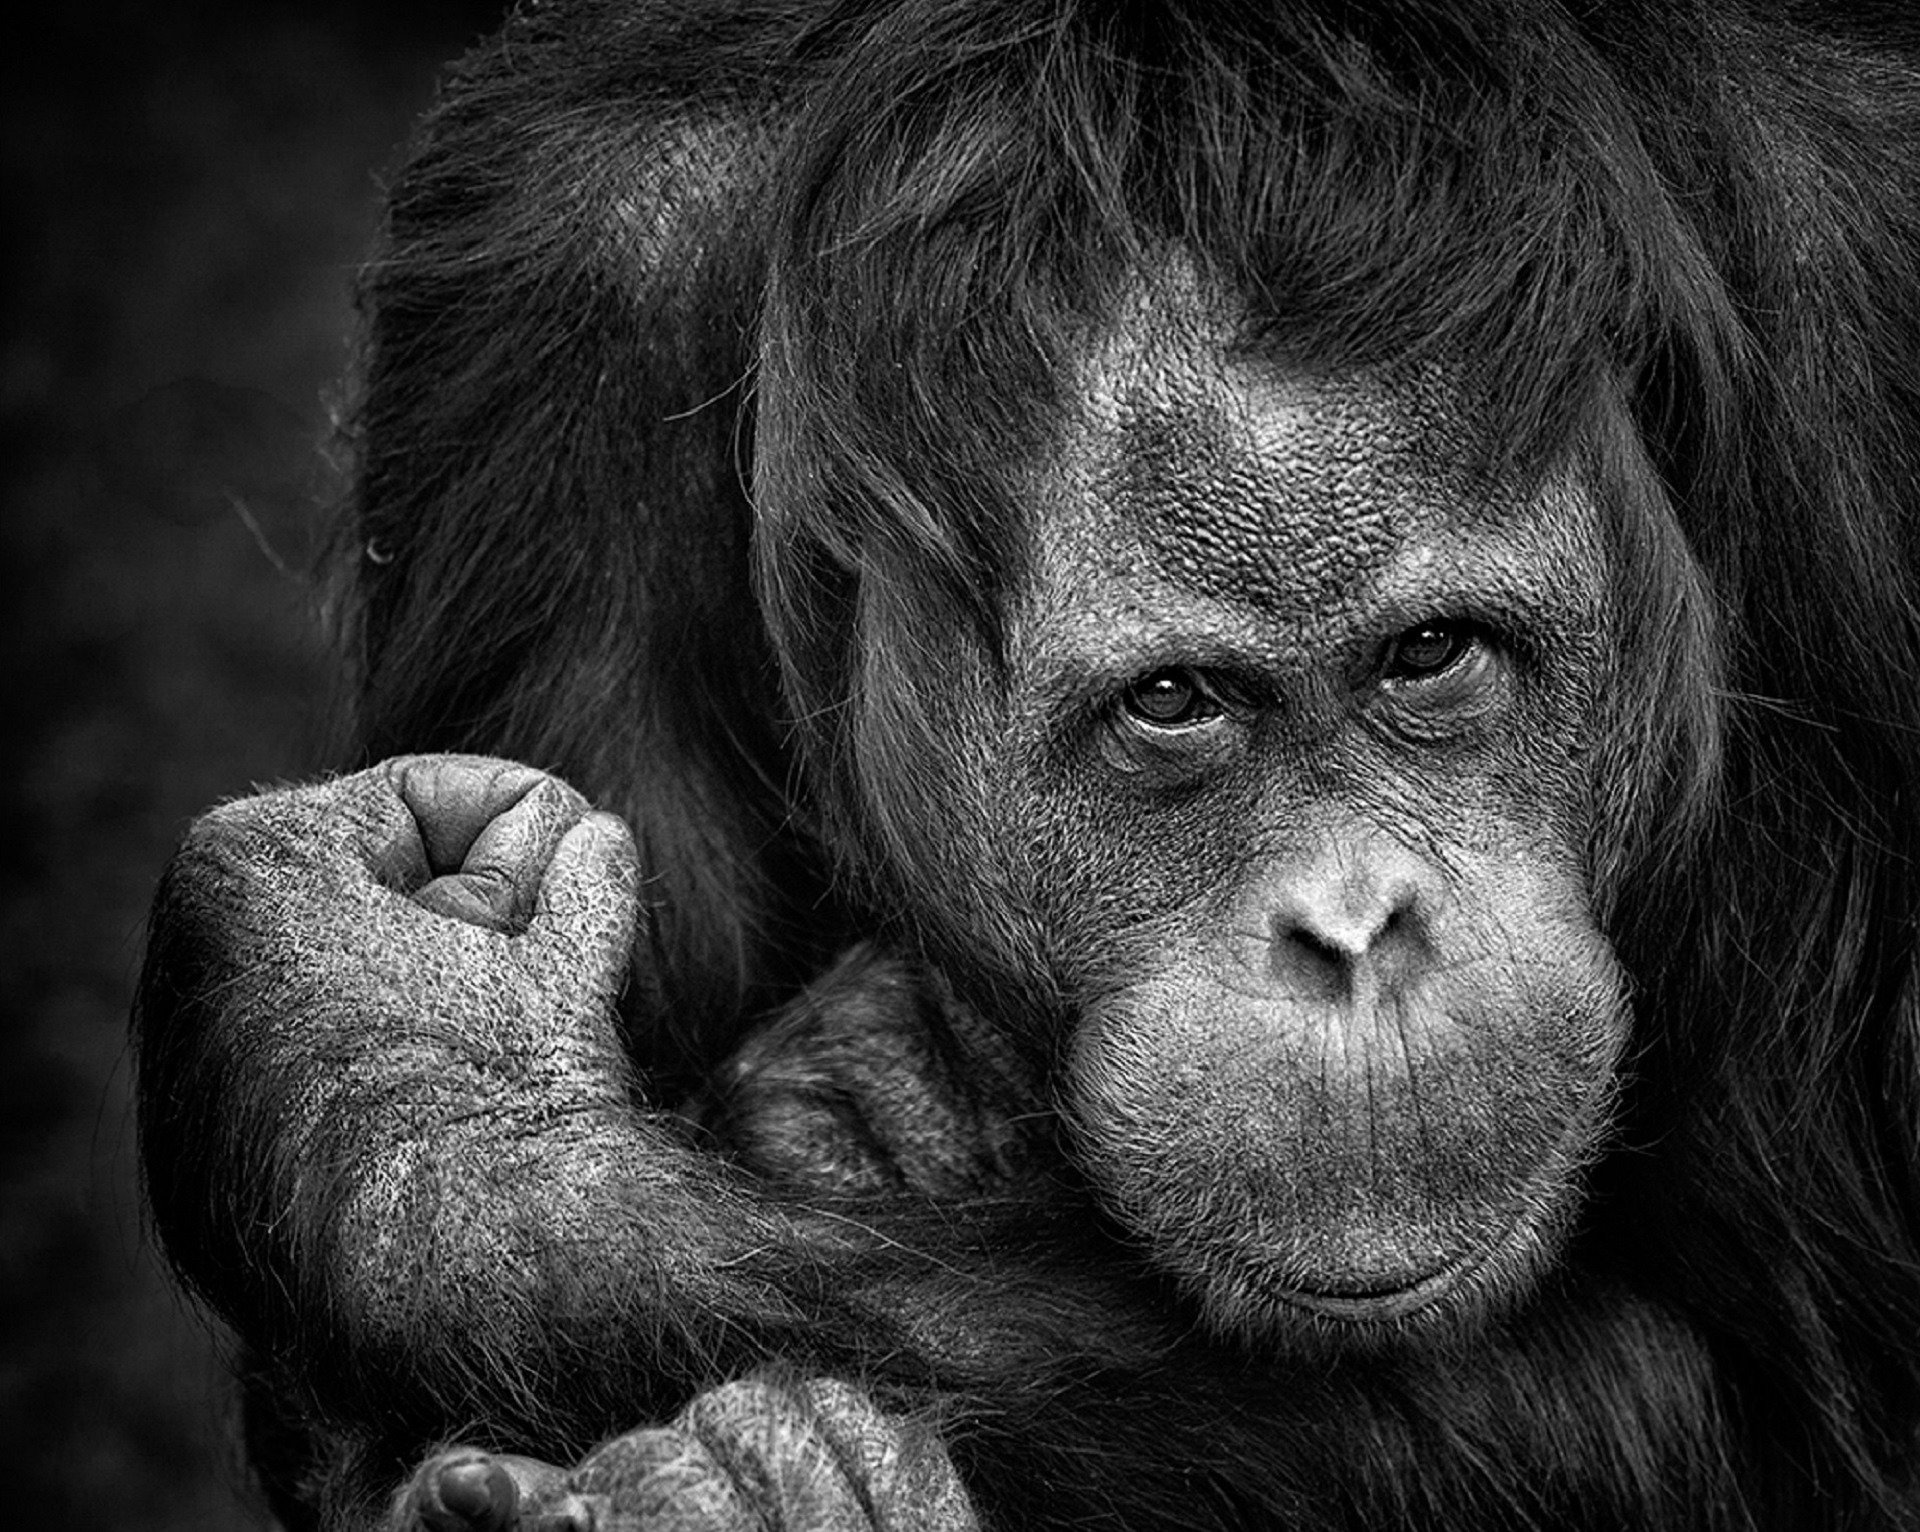 Mengukur efektivitas biaya dari berbagai strategi untuk menyelamatkan orangutan